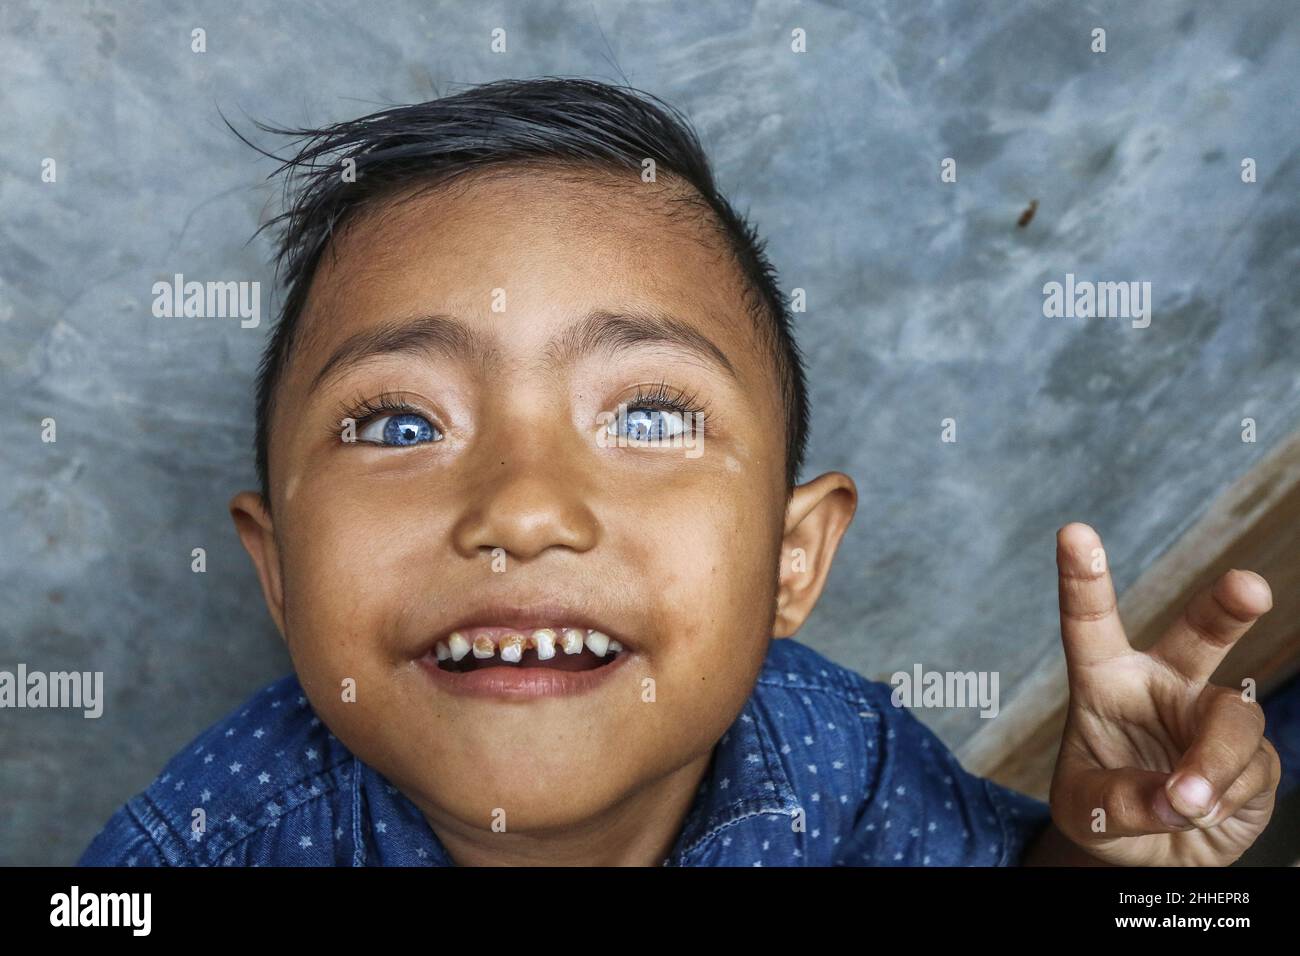 Ein 4-jähriges Baby ist mit hellblauen Augäpfeln begabt. Neben blauen Augen hat er auch eine Vision des sechsten Sinnes Stockfoto